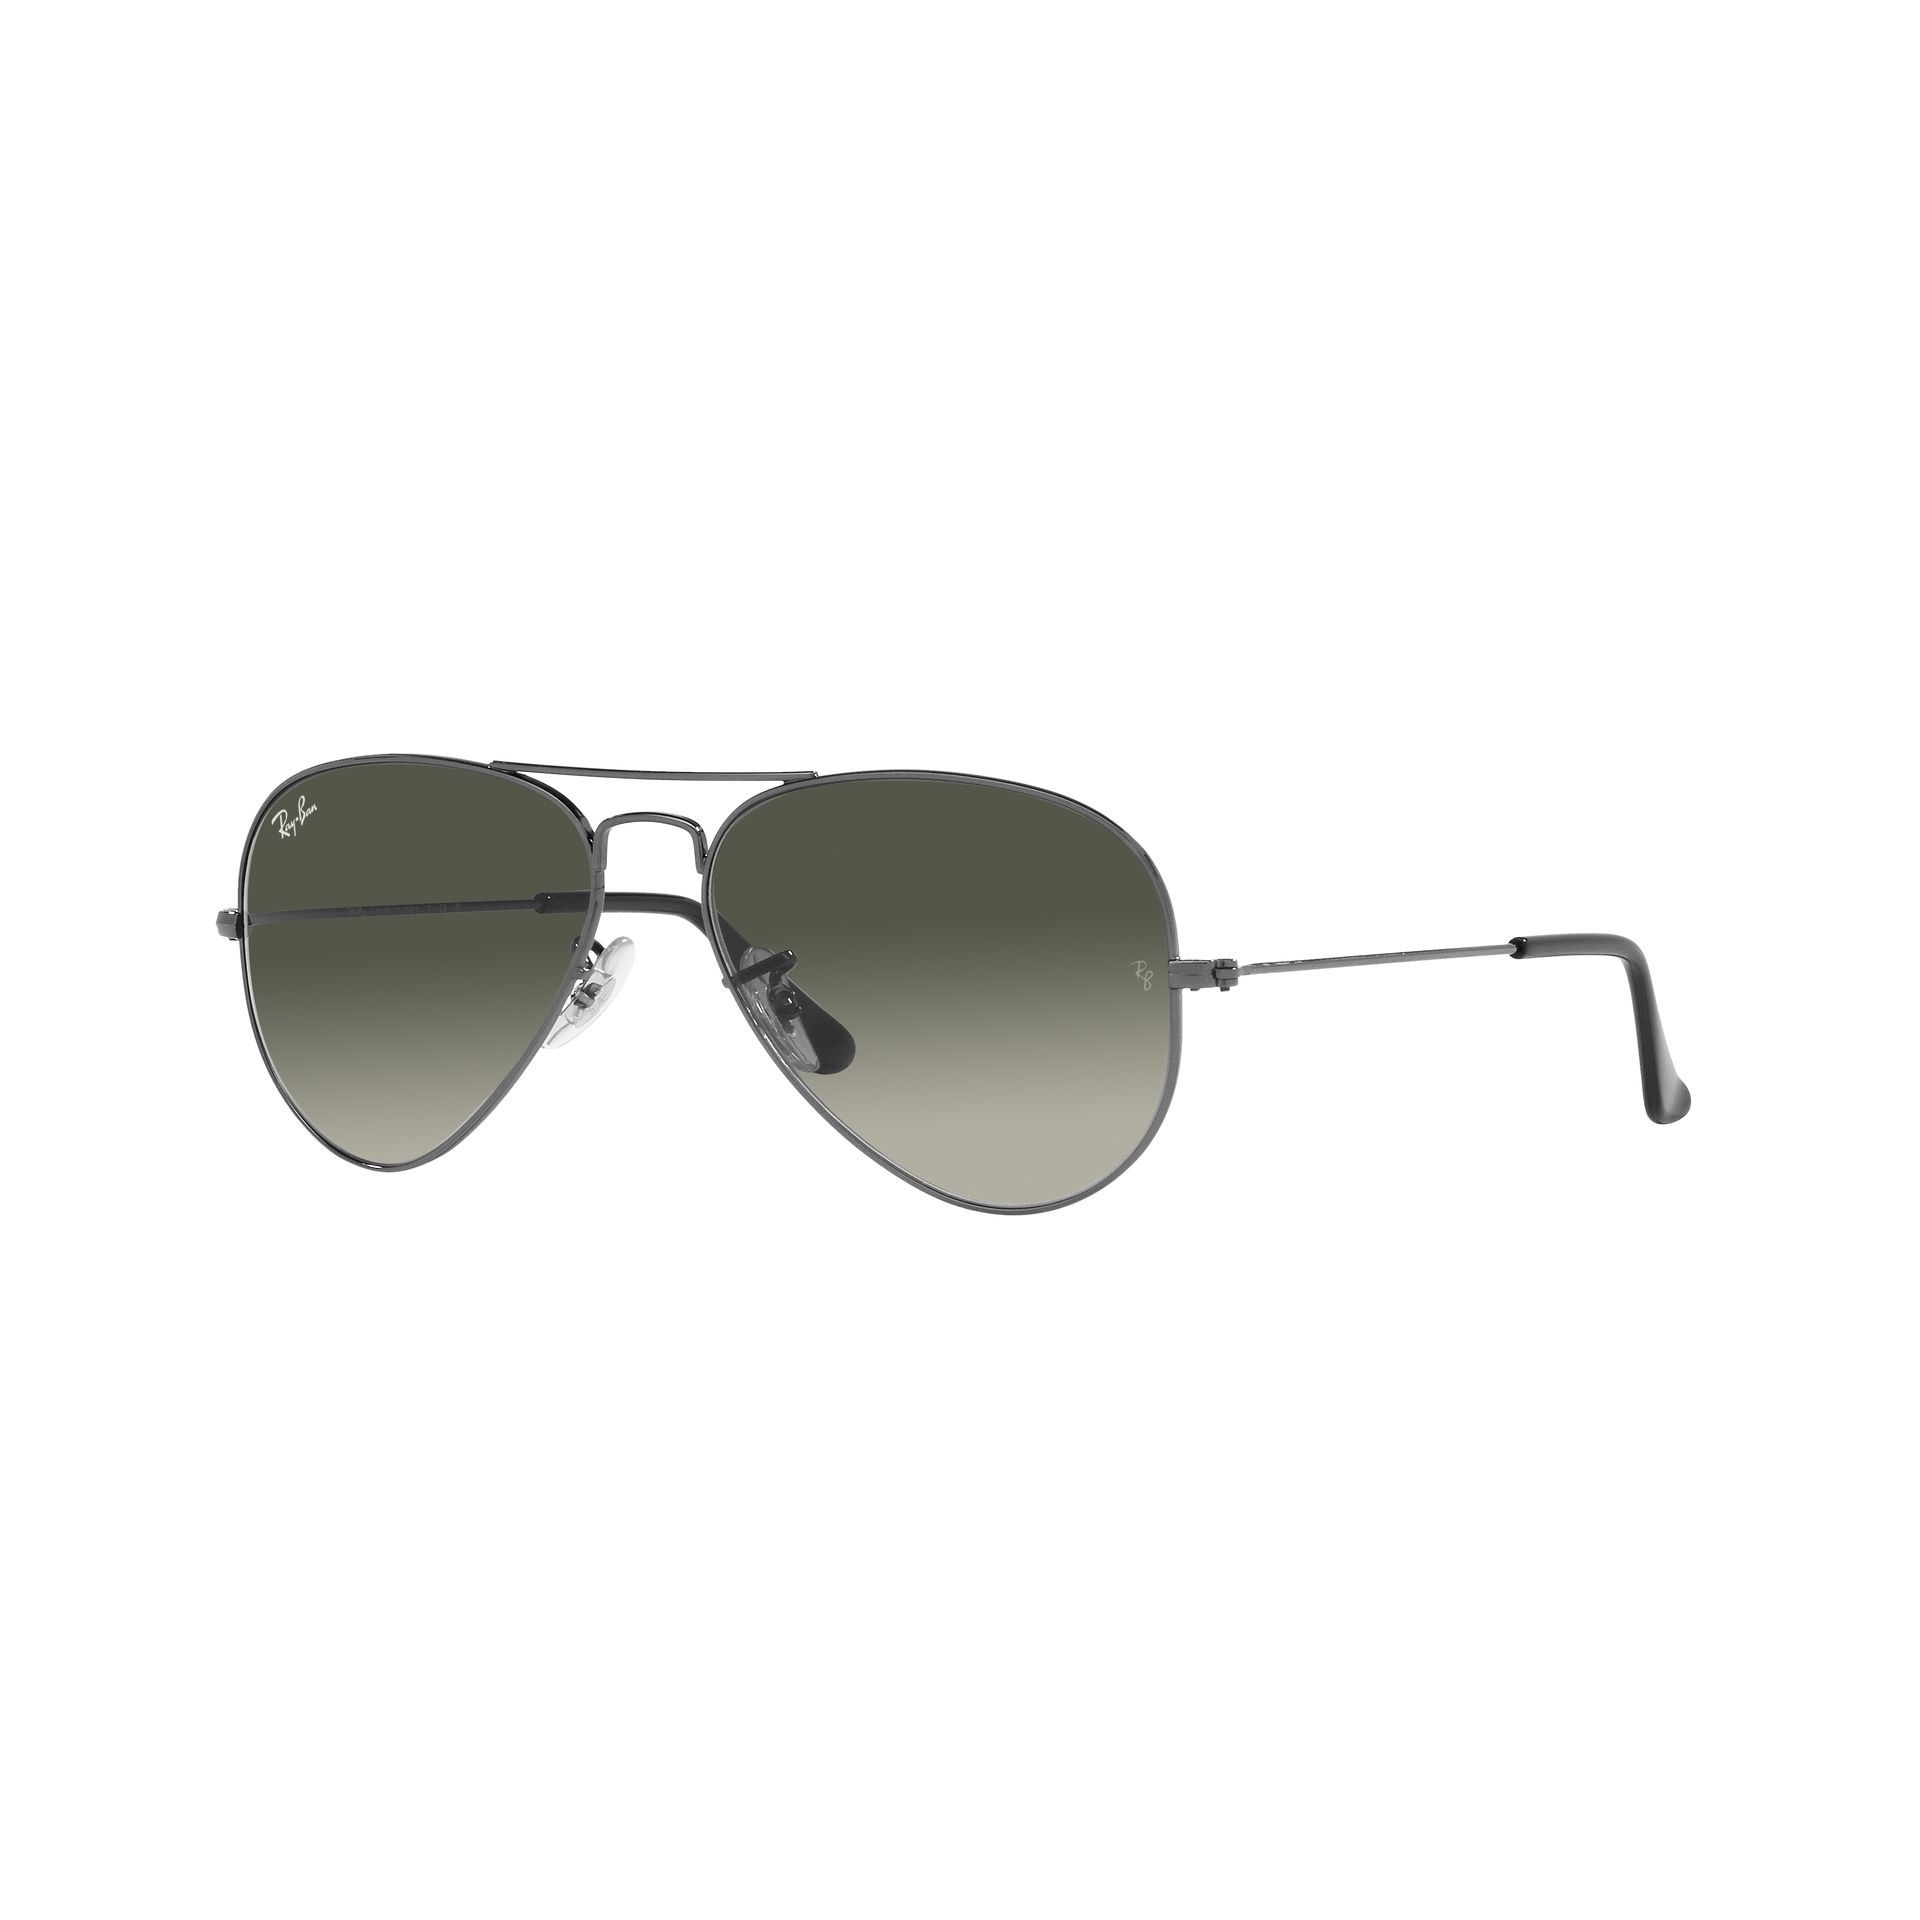 Aviator   Sunglasses RB3025 004 71 - size 55